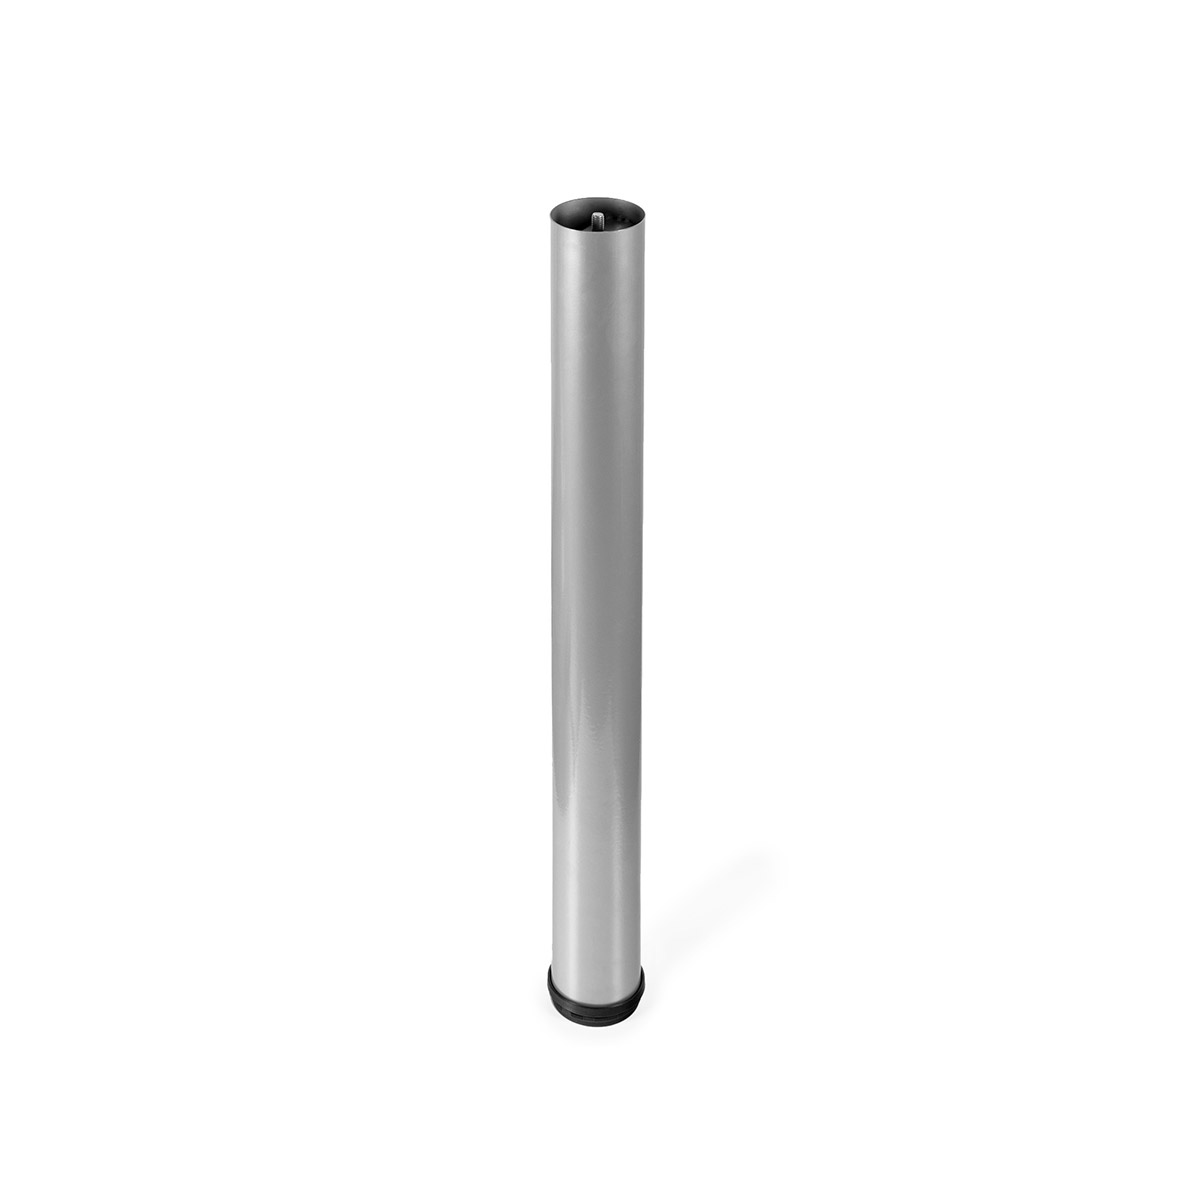 Pied cylindrique en acier d'une hauteur de 700 mm et finition aluminium. Dimensions: 80x80x700 mm